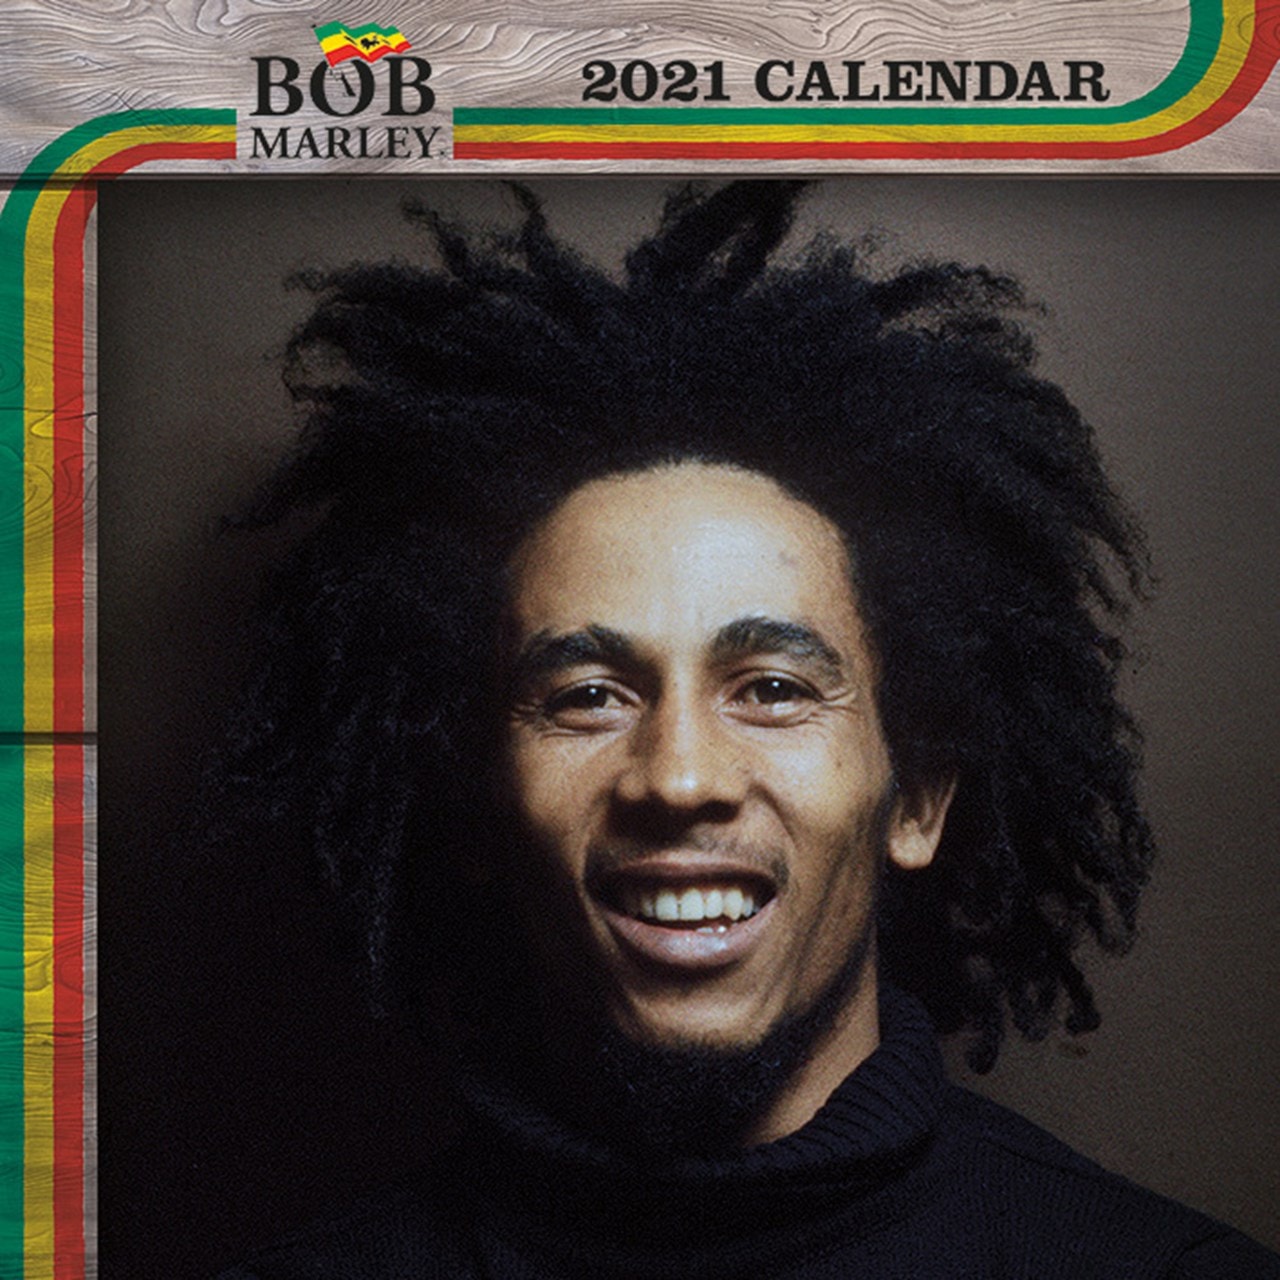 bob-marley-square-2021-calendar-calendars-free-shipping-over-20-hmv-store